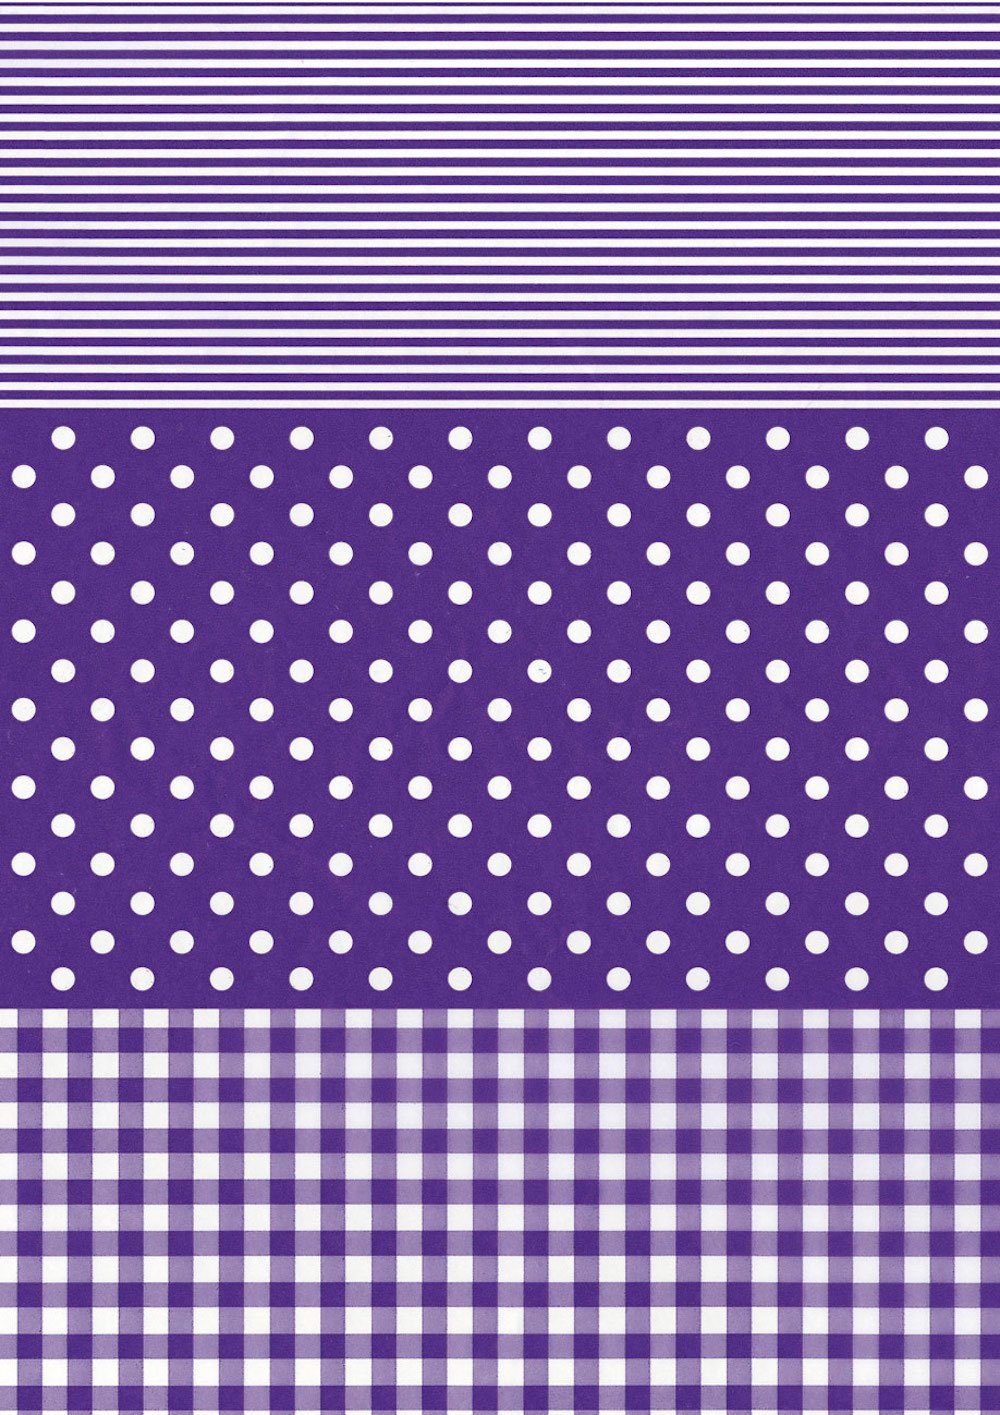 H-Erzmade Zeichenpapier Décopatch-Papier 488 Streifen/Punkte/Karo violett